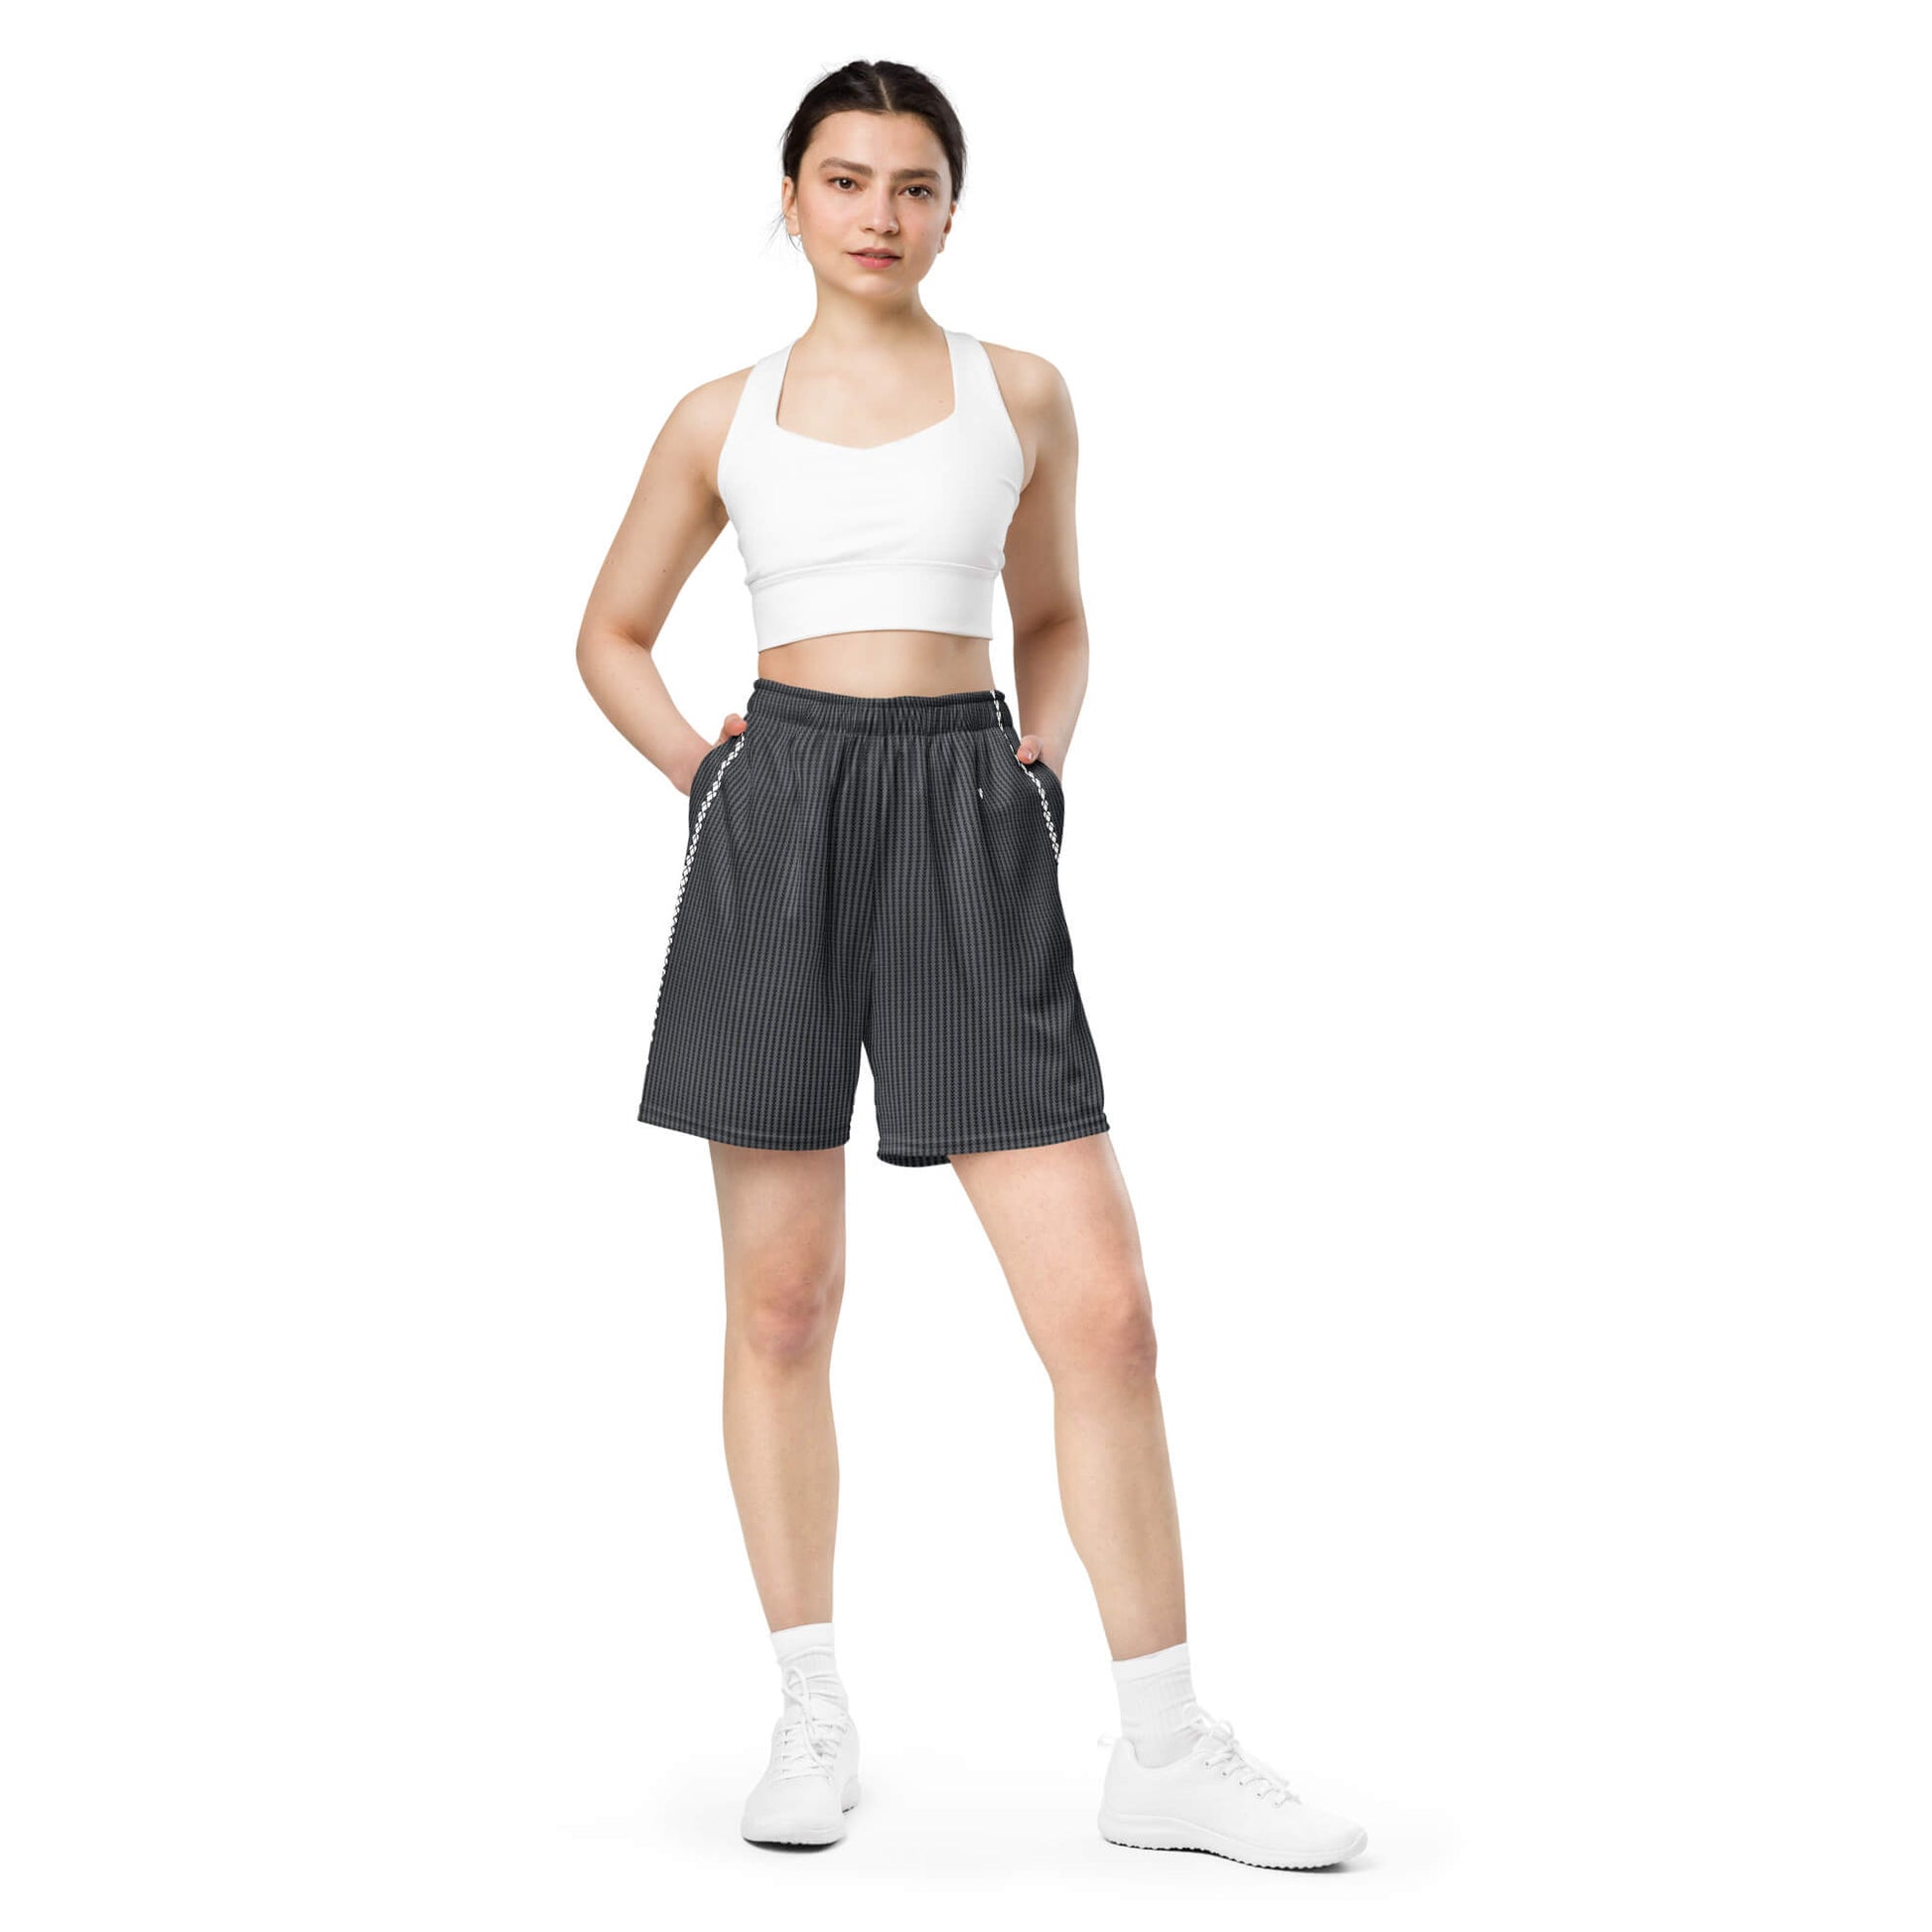 Unique Lovogram Design on Black Genderless Shorts